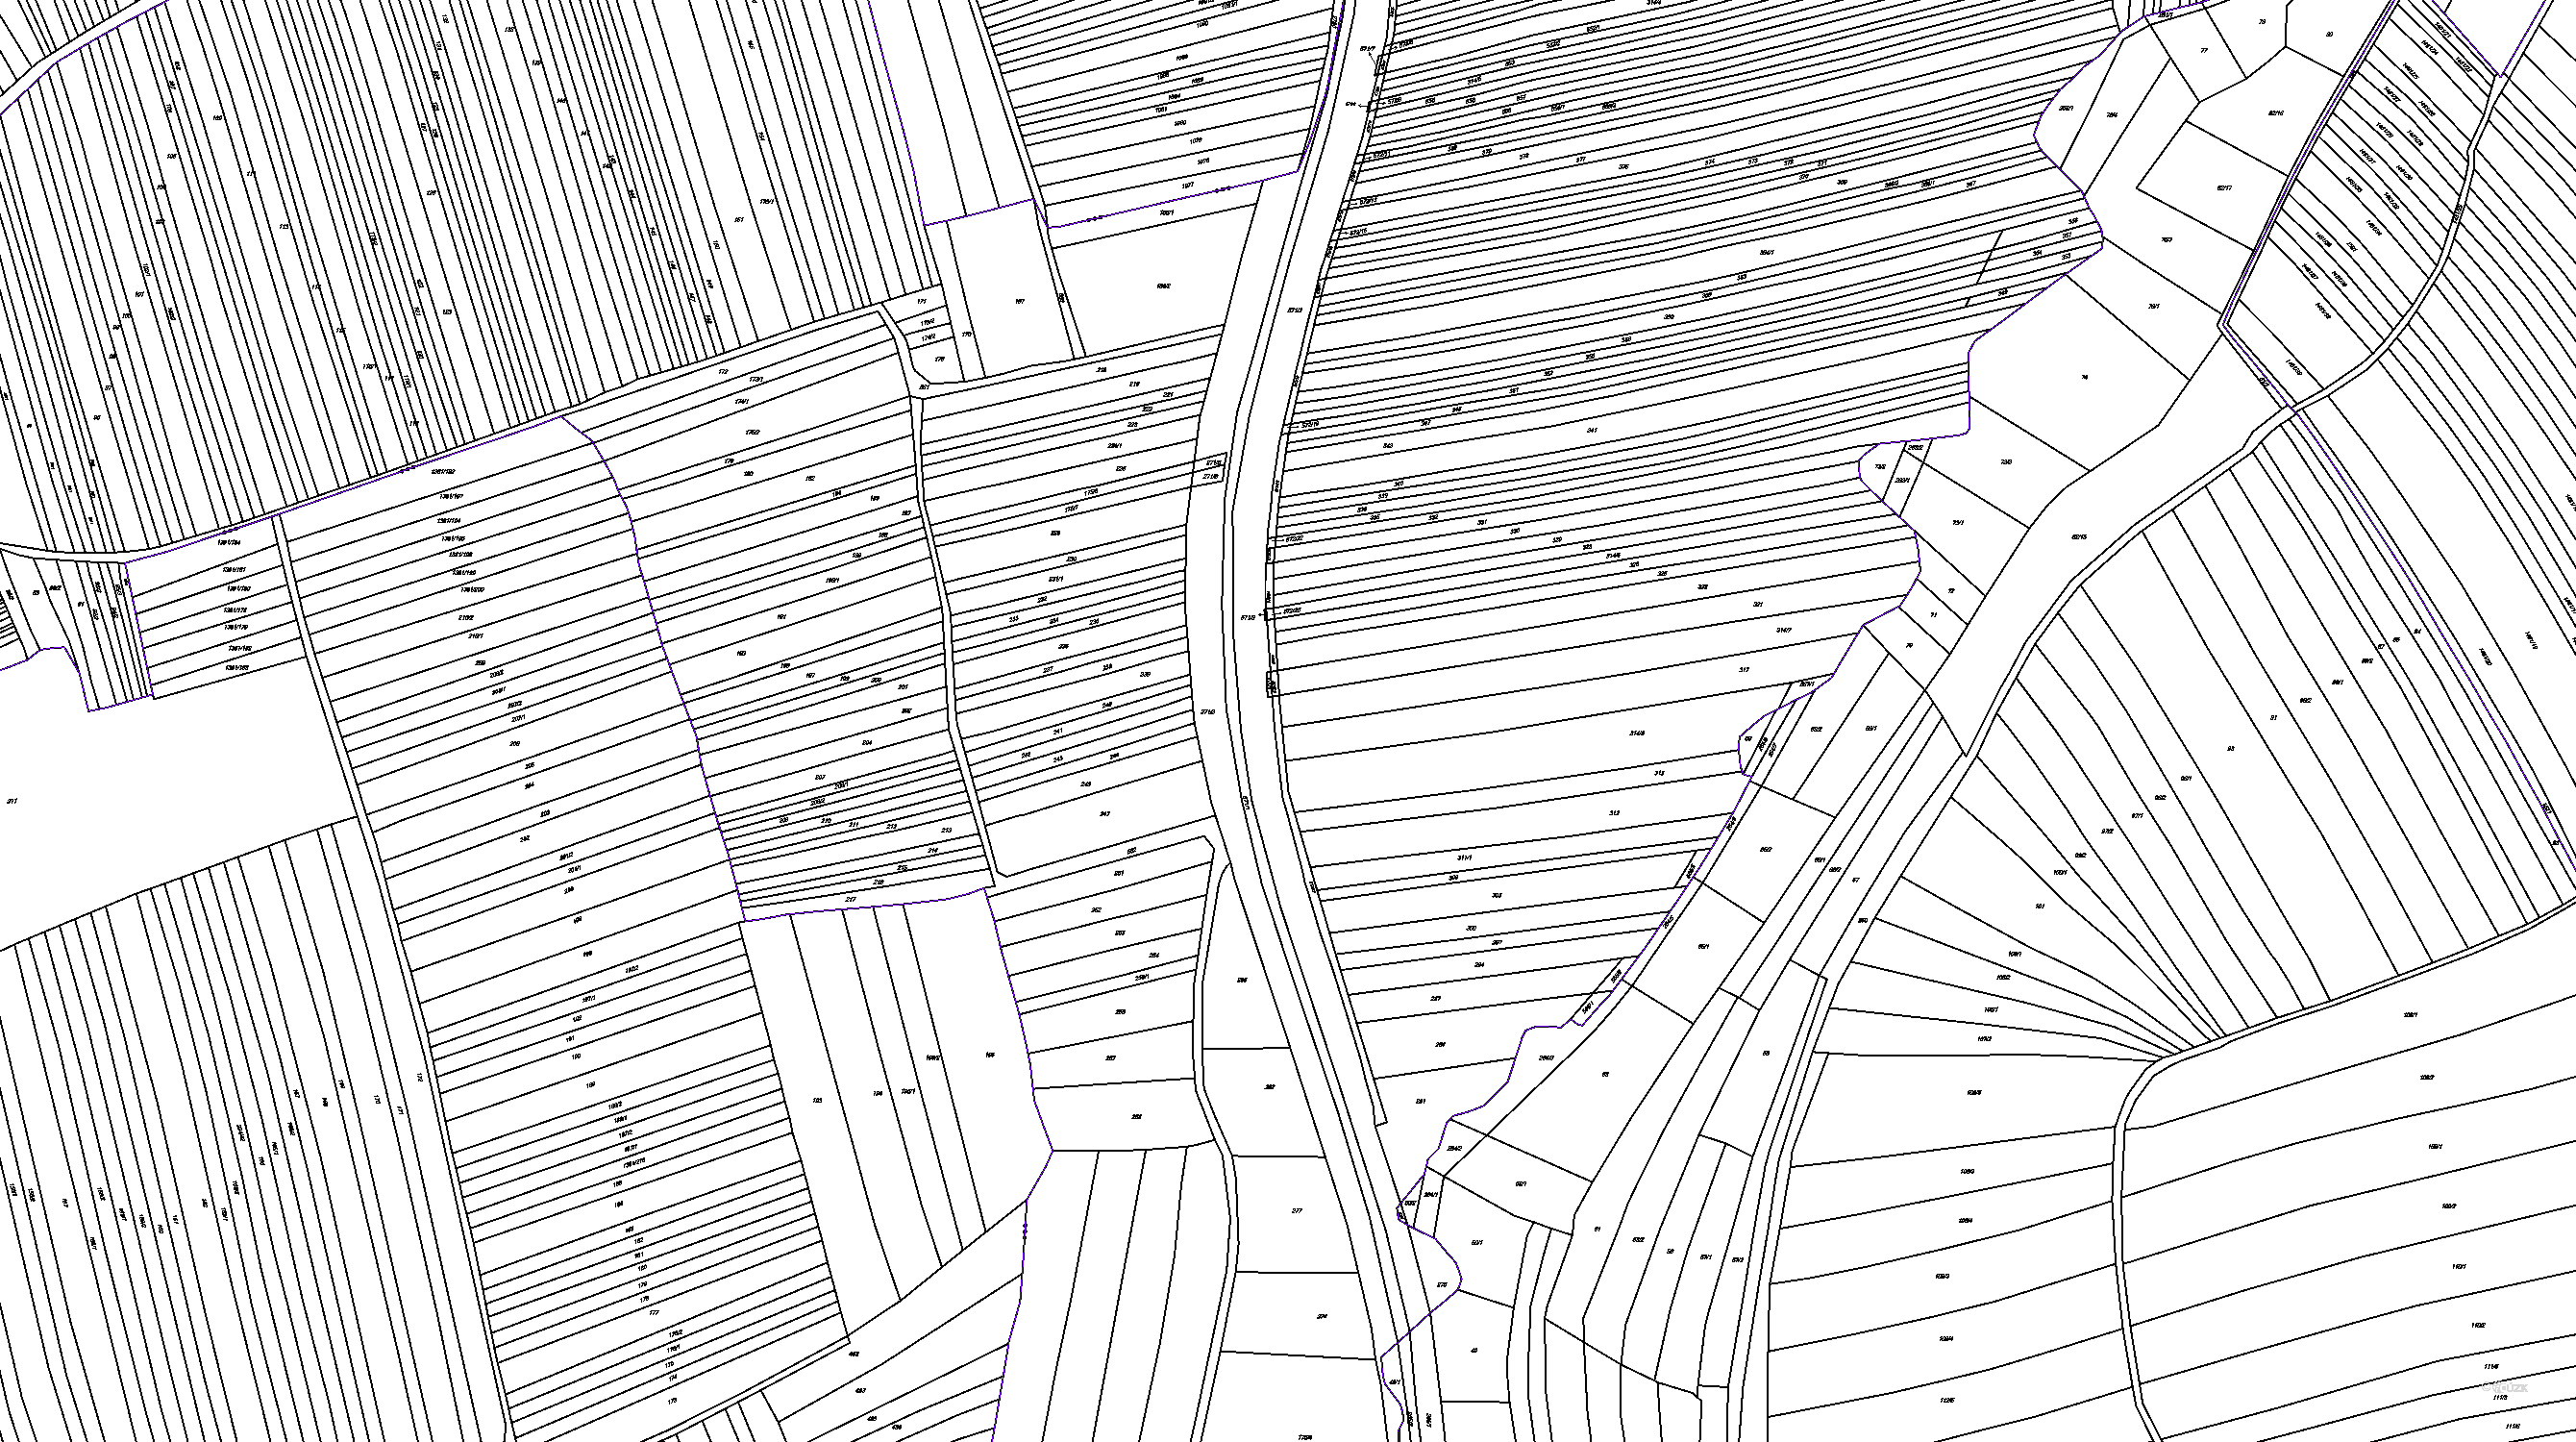 Katastrální mapa pozemků a čísla parcel Mistřice II